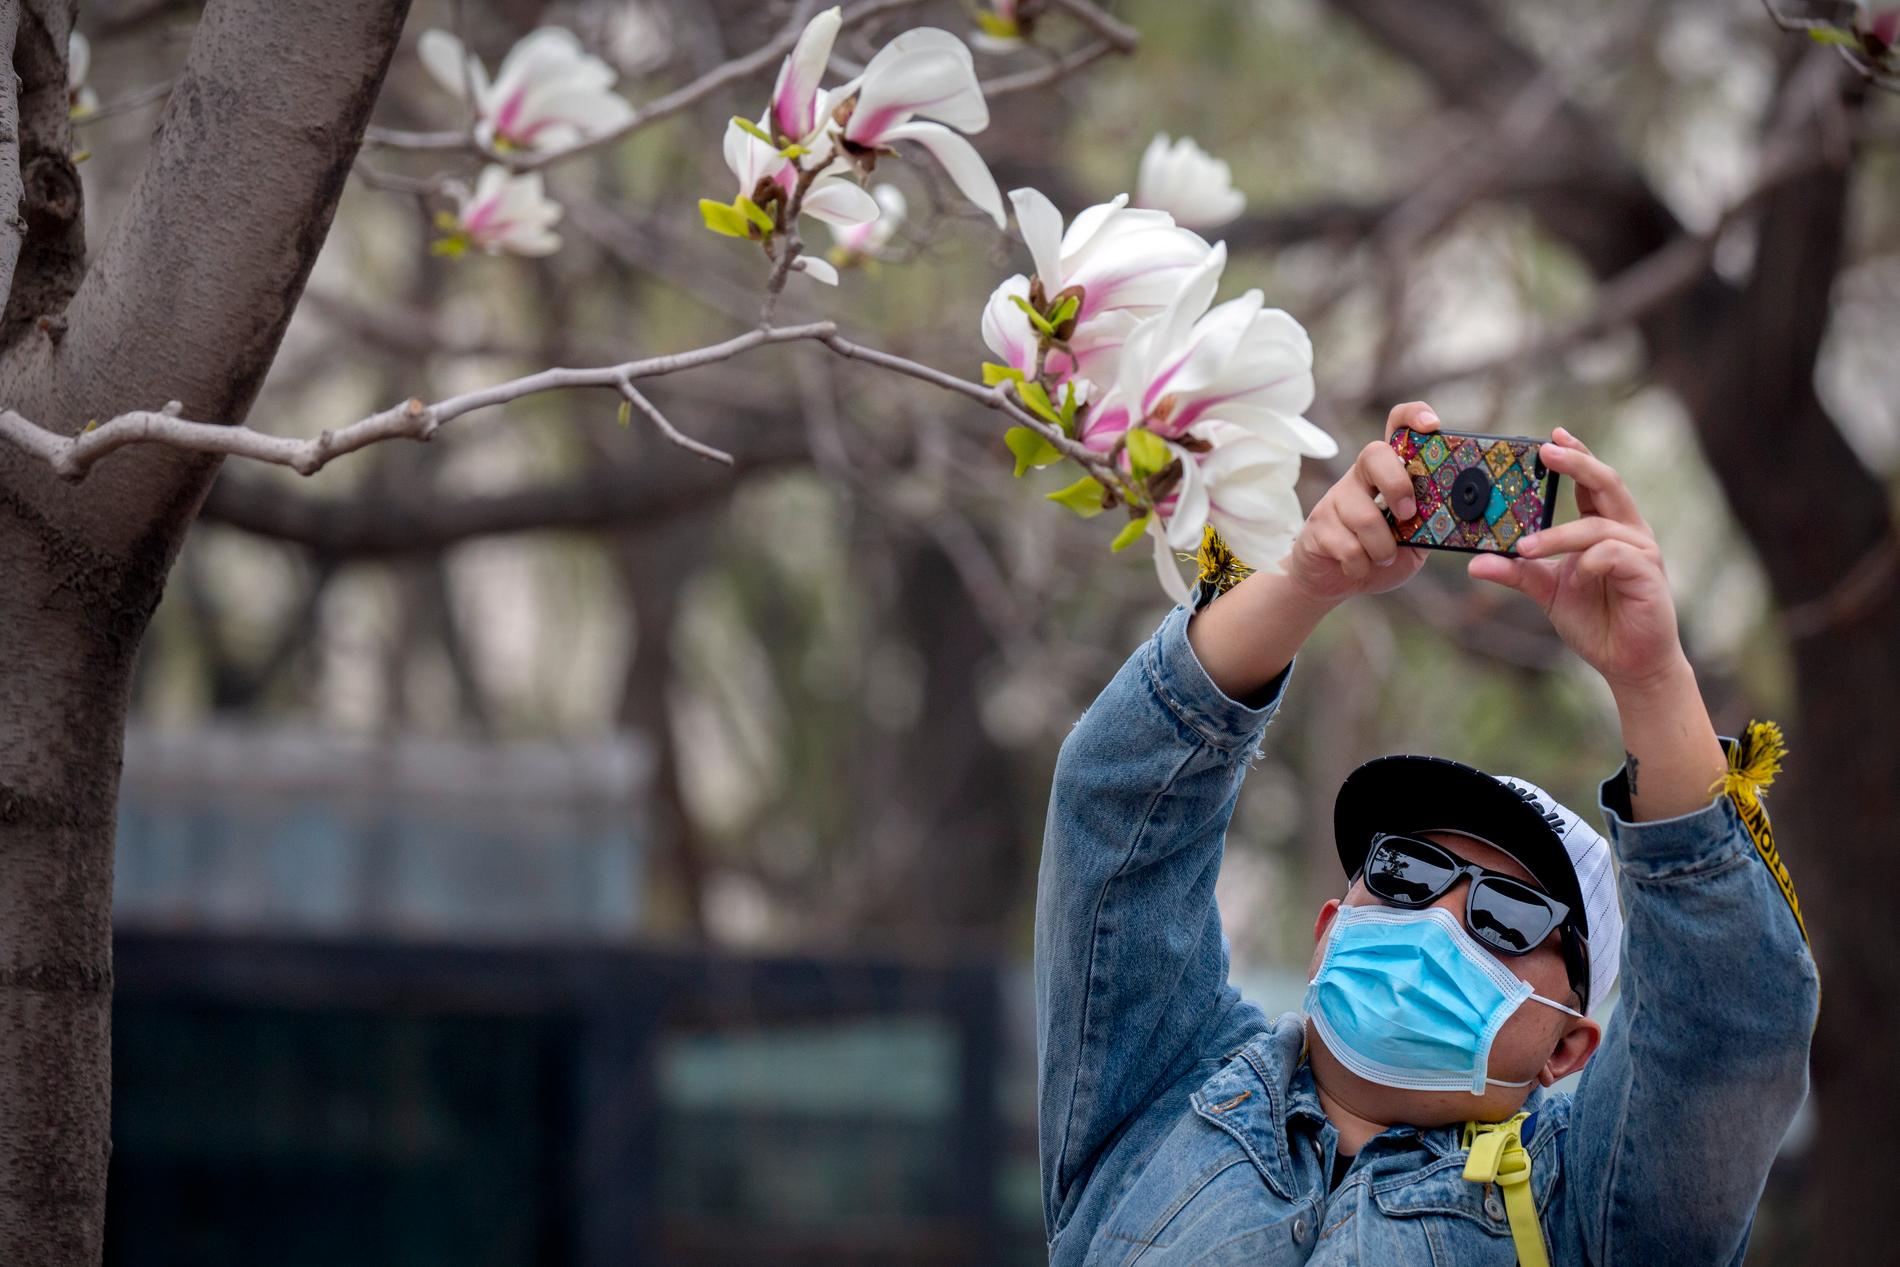 Försäljningen och produktionen av munskydd i Kina har skjutit i höjden såväl innanför som utanför Kinas gränser. Här är en besökare på ett zoo i Peking som nyligen öppnat igen efter att ha varit stängt på grund av coronautbrottet.